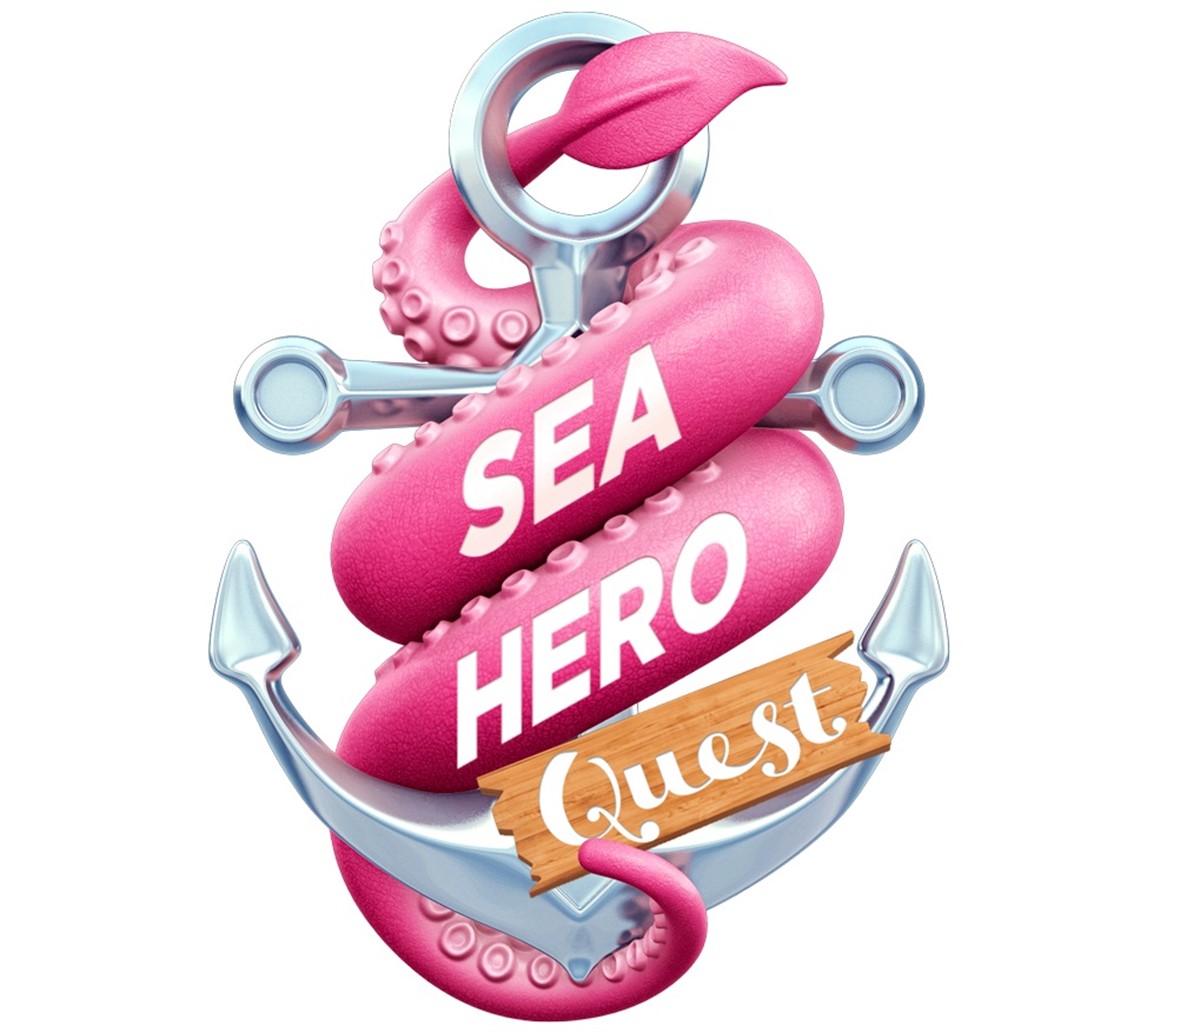 Deutsche Telekom a lansat Sea Hero Quest, un joc inovator pentru dispozitive mobile, care are ca scop adunarea de informatii pentru diagnosticarea dementei.